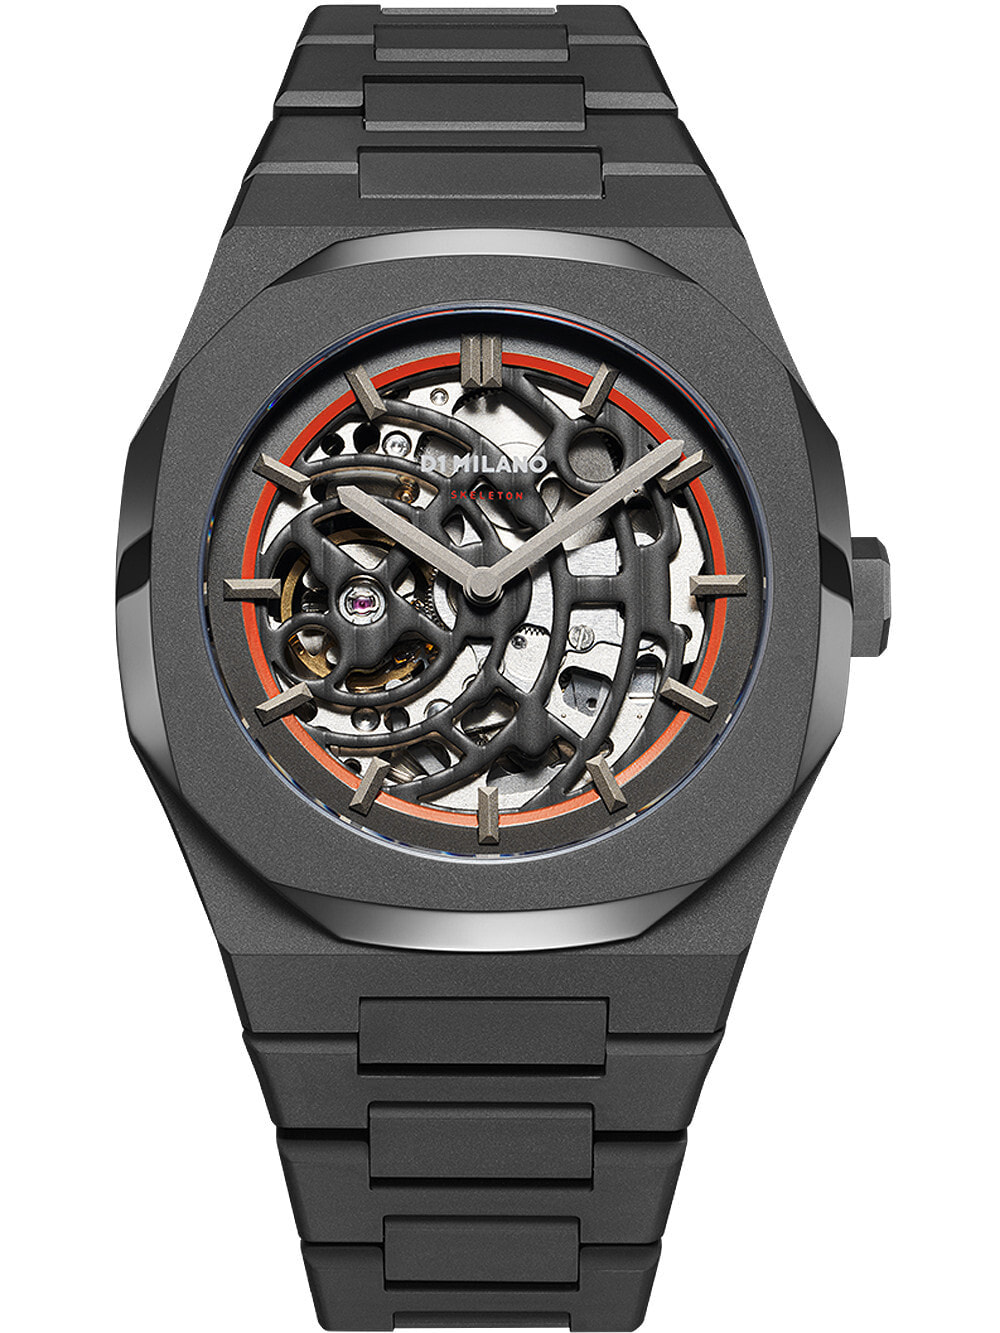 Мужские наручные часы со стальным браслетом D1 Milano SKBJ06 Skeleton automatic 42mm 5ATM